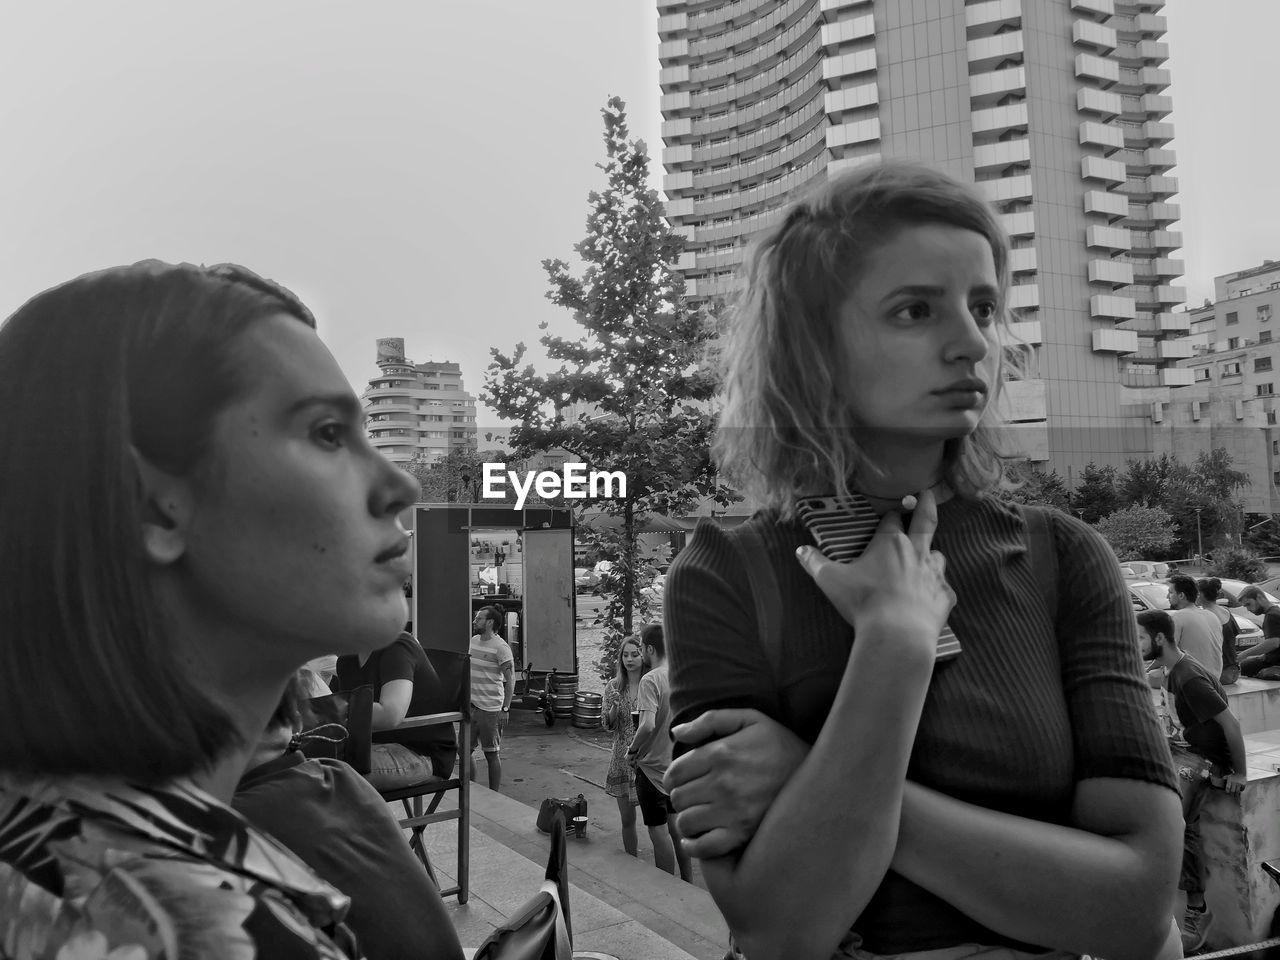 Women looking away against buildings in city